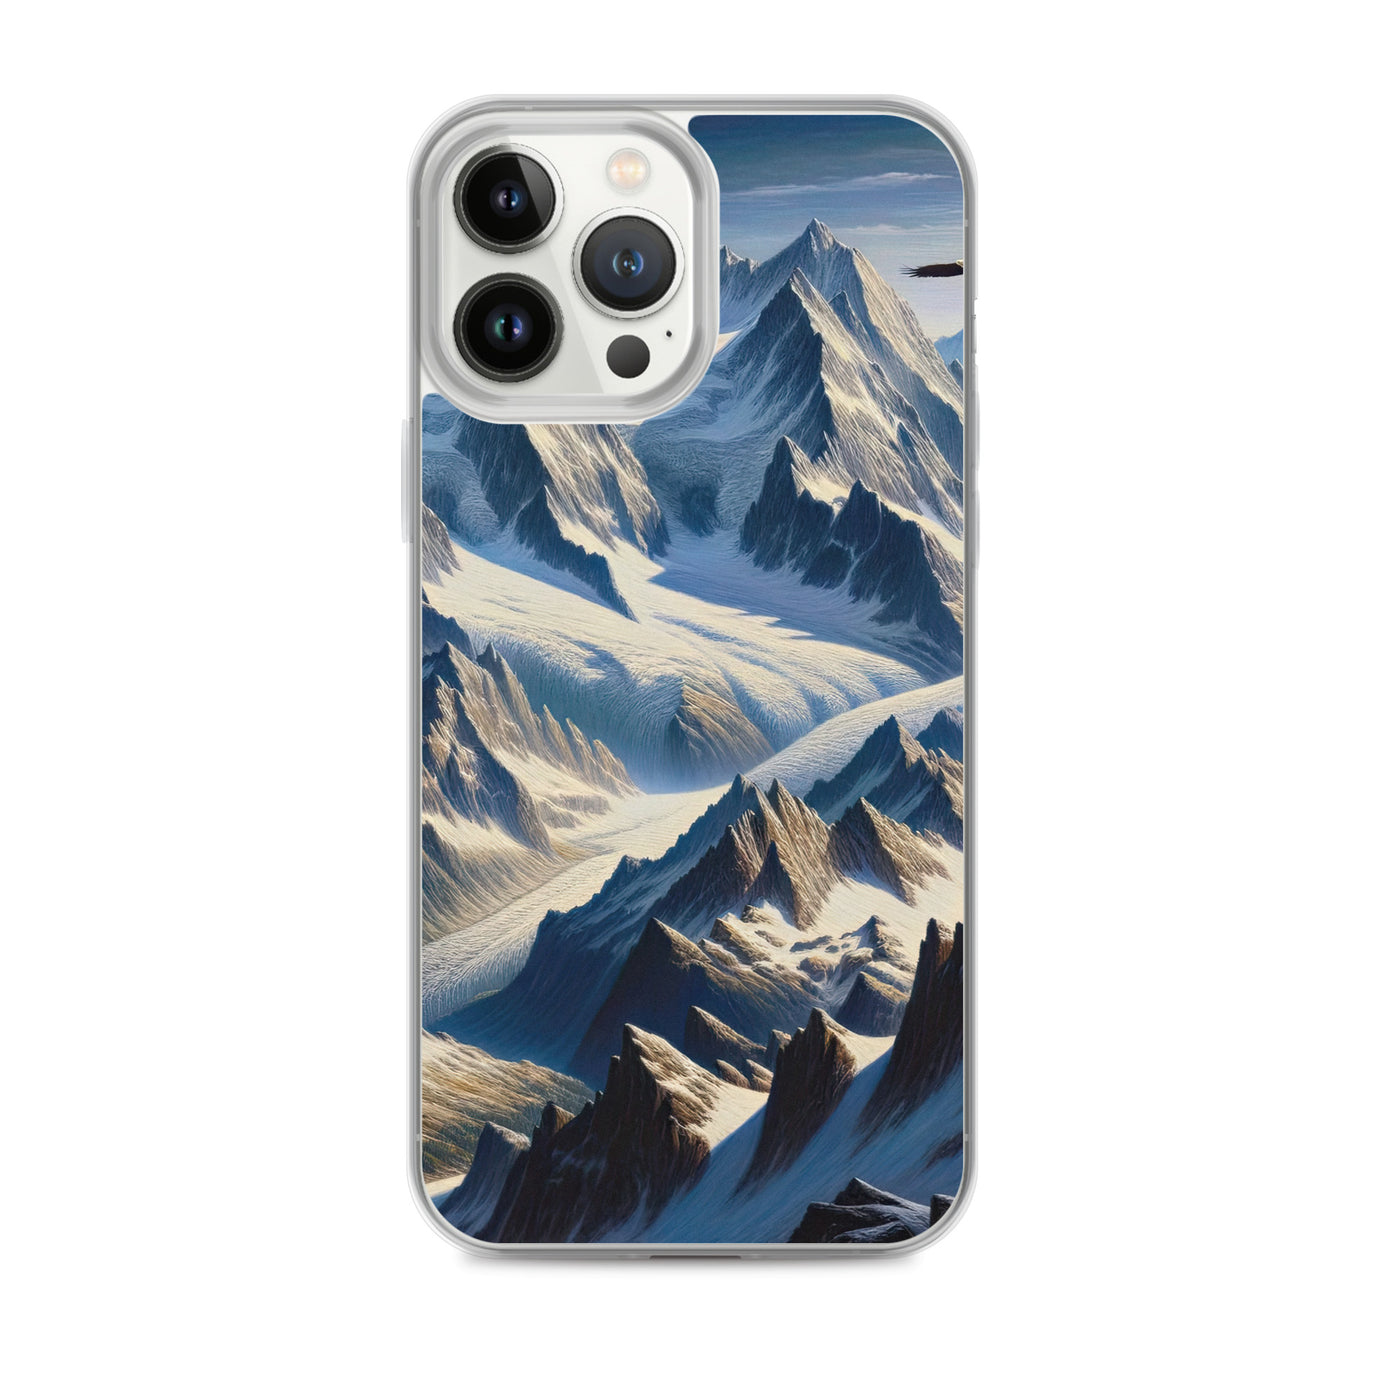 Ölgemälde der Alpen mit hervorgehobenen zerklüfteten Geländen im Licht und Schatten - iPhone Schutzhülle (durchsichtig) berge xxx yyy zzz iPhone 13 Pro Max